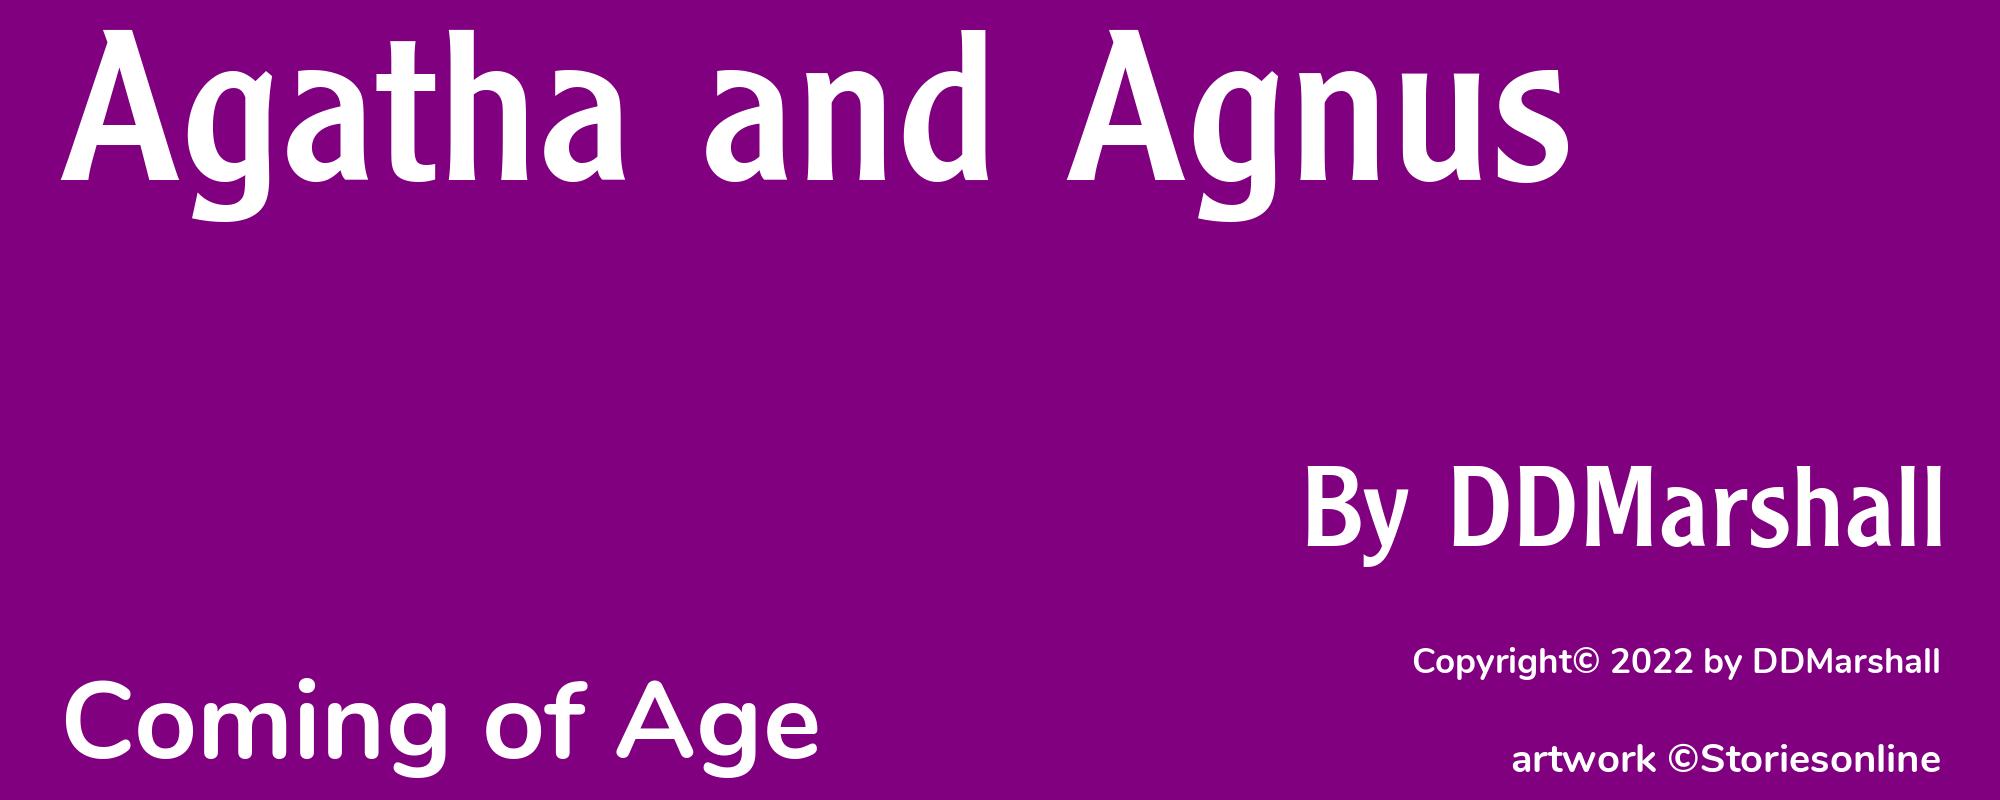 Agatha and Agnus - Cover